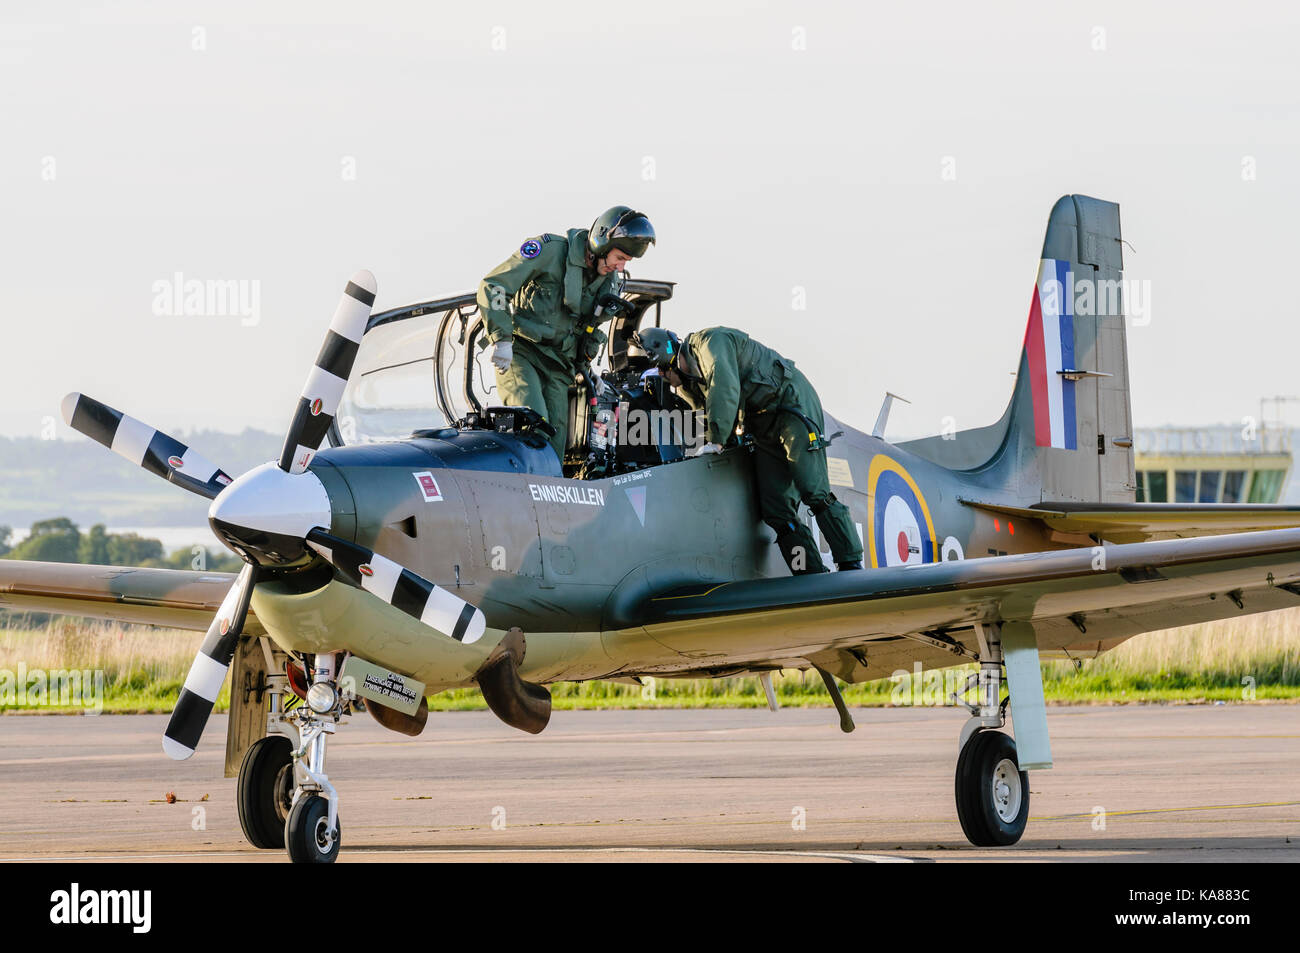 RAF Aldergrove, Nordirland. 25/09/2017 - Pilot- und Ausbildung steigen Sie ein tucano Ausbildung Flugzeuge von 72 (R) Squadron, wie Sie landen an RAF Aldergrove als Teil ihrer hundertjährigen Feiern. Eines der Flugzeuge wurde speziell versiegelter Lackierung aus der Schlacht von Großbritannien Spitfire gemalt. Stockfoto